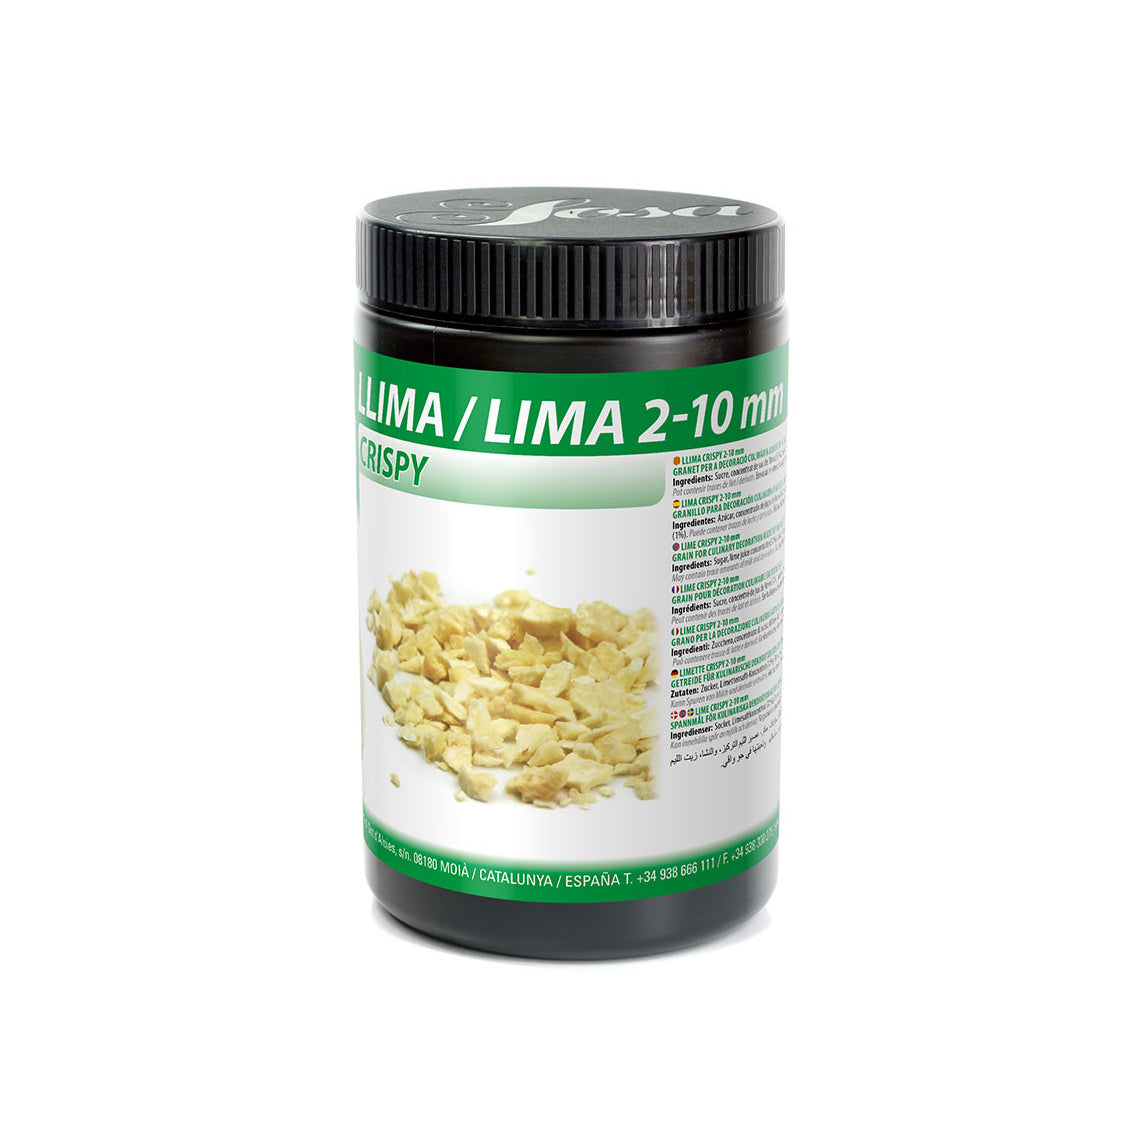 SOSA Freeze Dried Lime Crispy 2-10mm, 200g